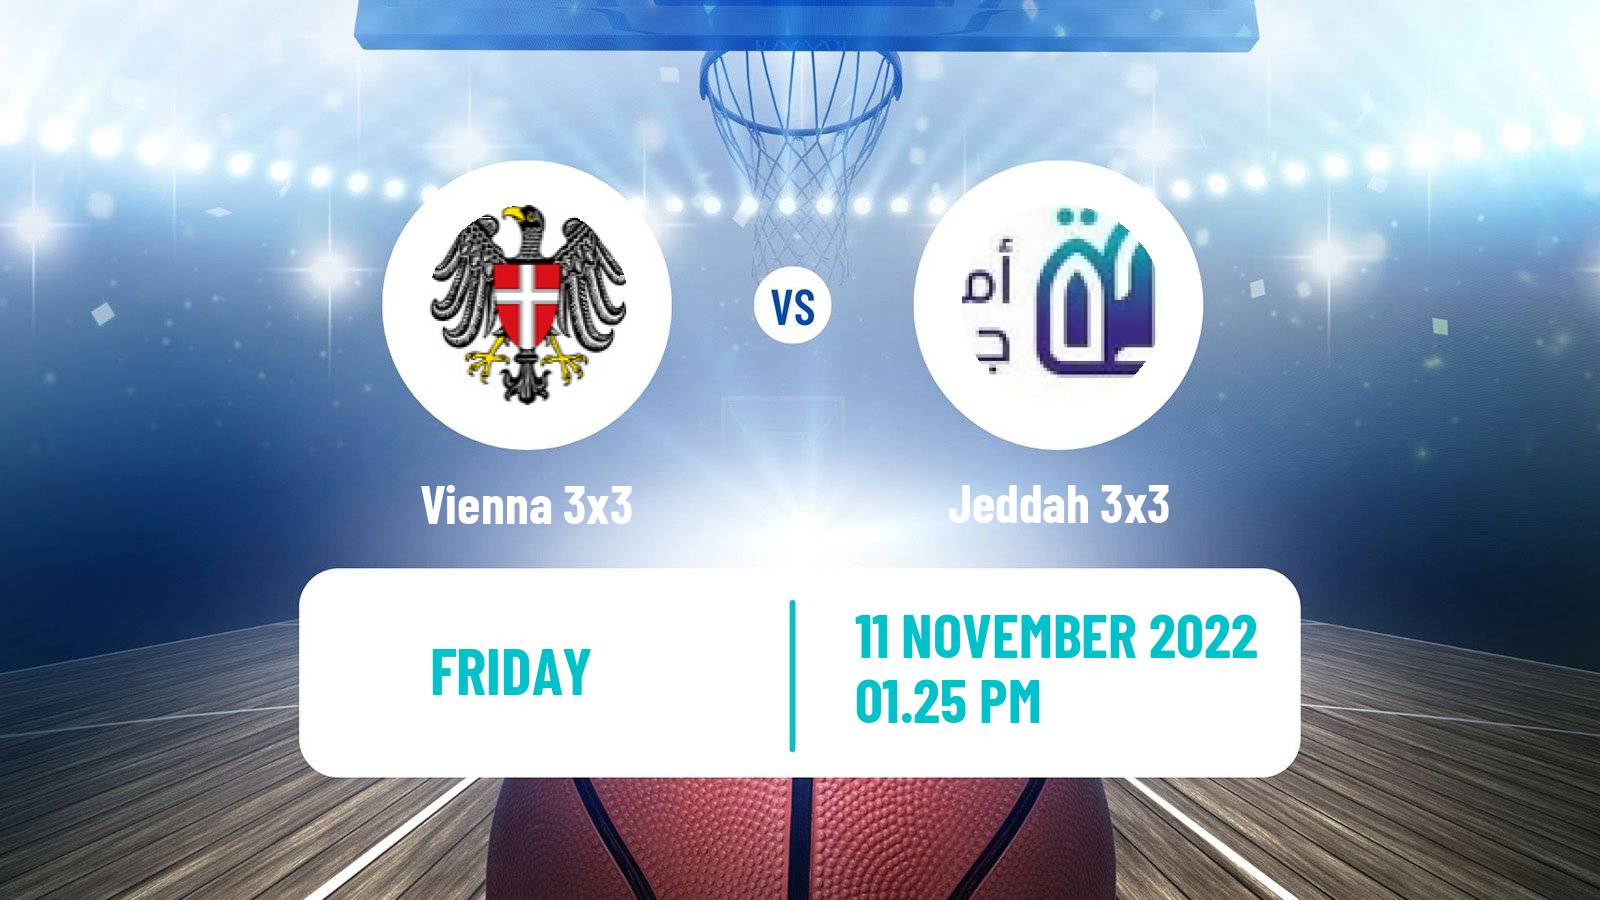 Basketball World Tour Riyadh 3x3 Vienna 3x3 - Jeddah 3x3